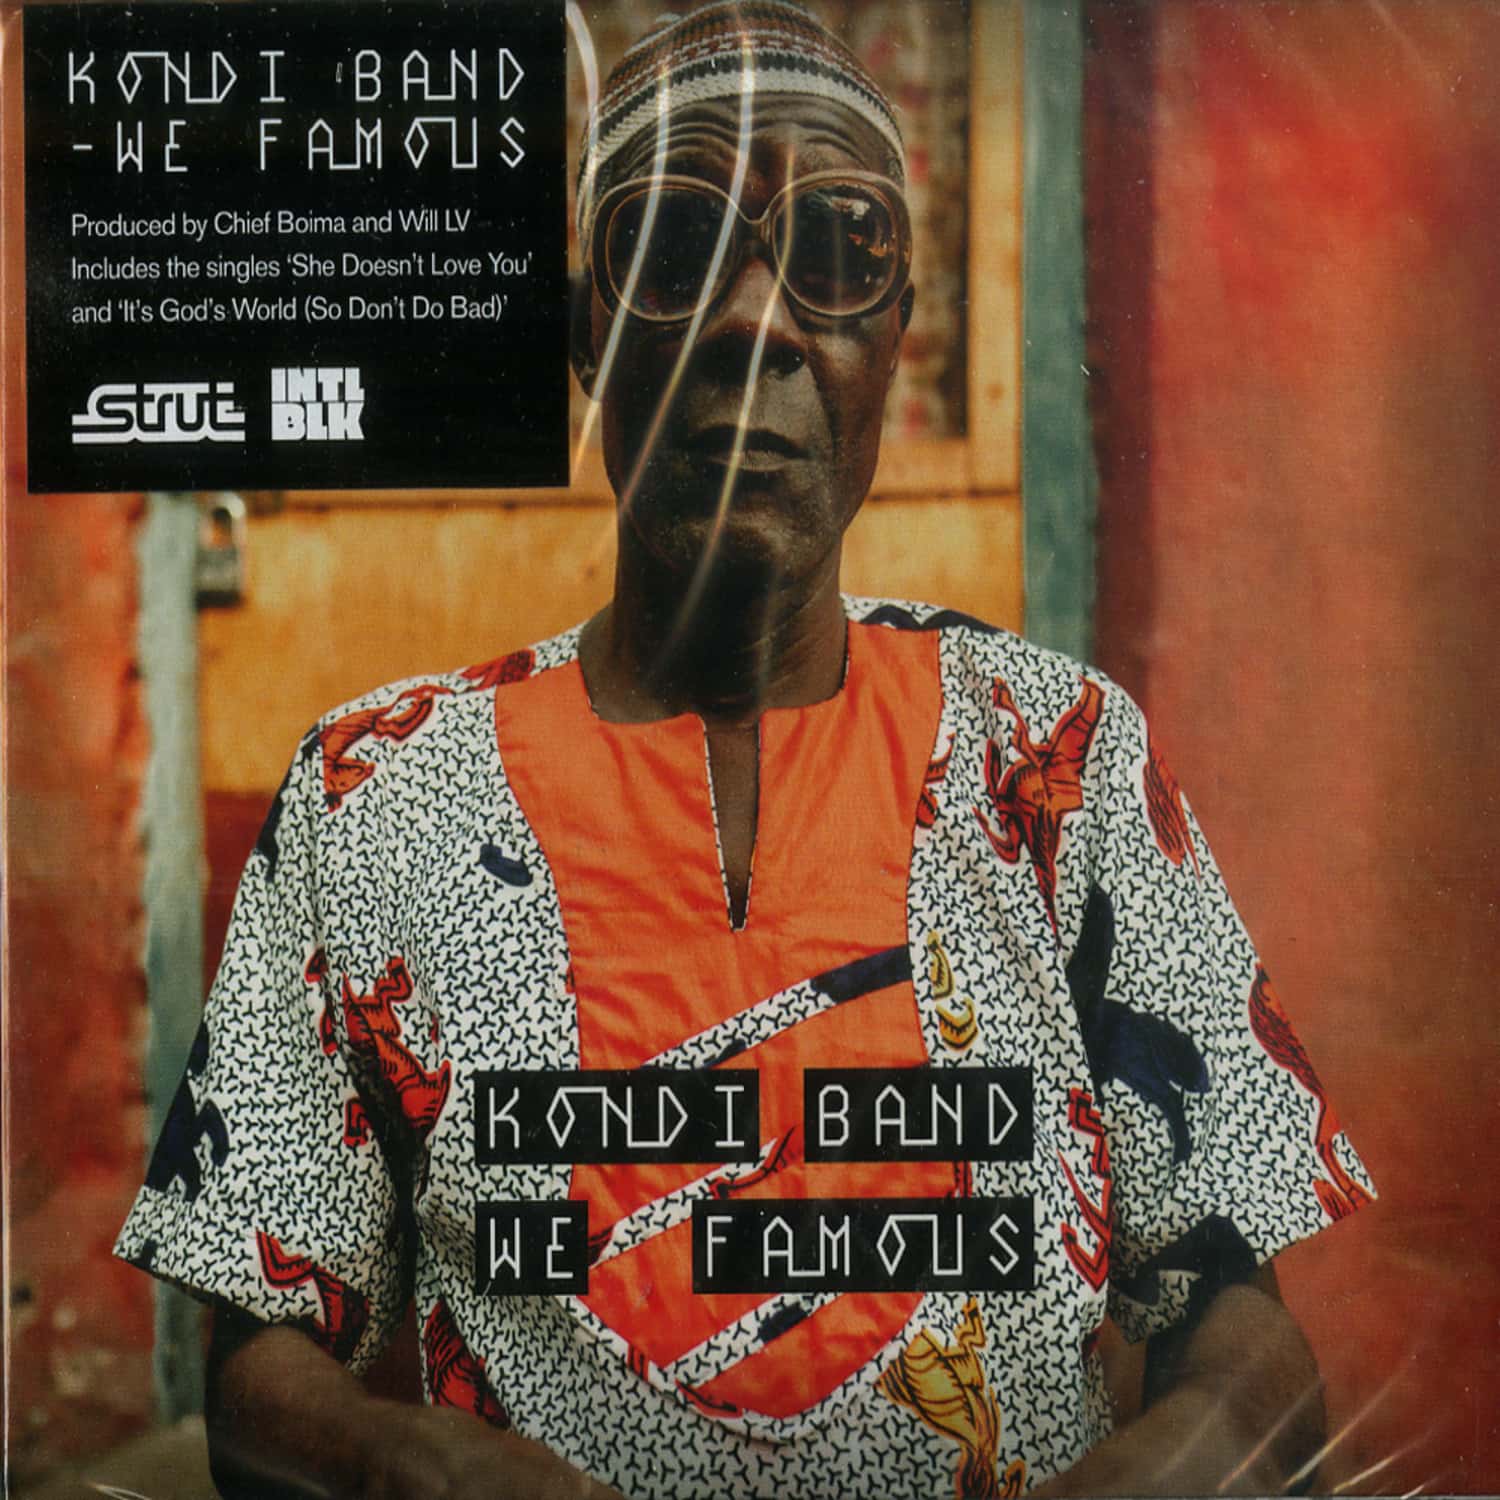 Kondi Band - WE FAMOUS 